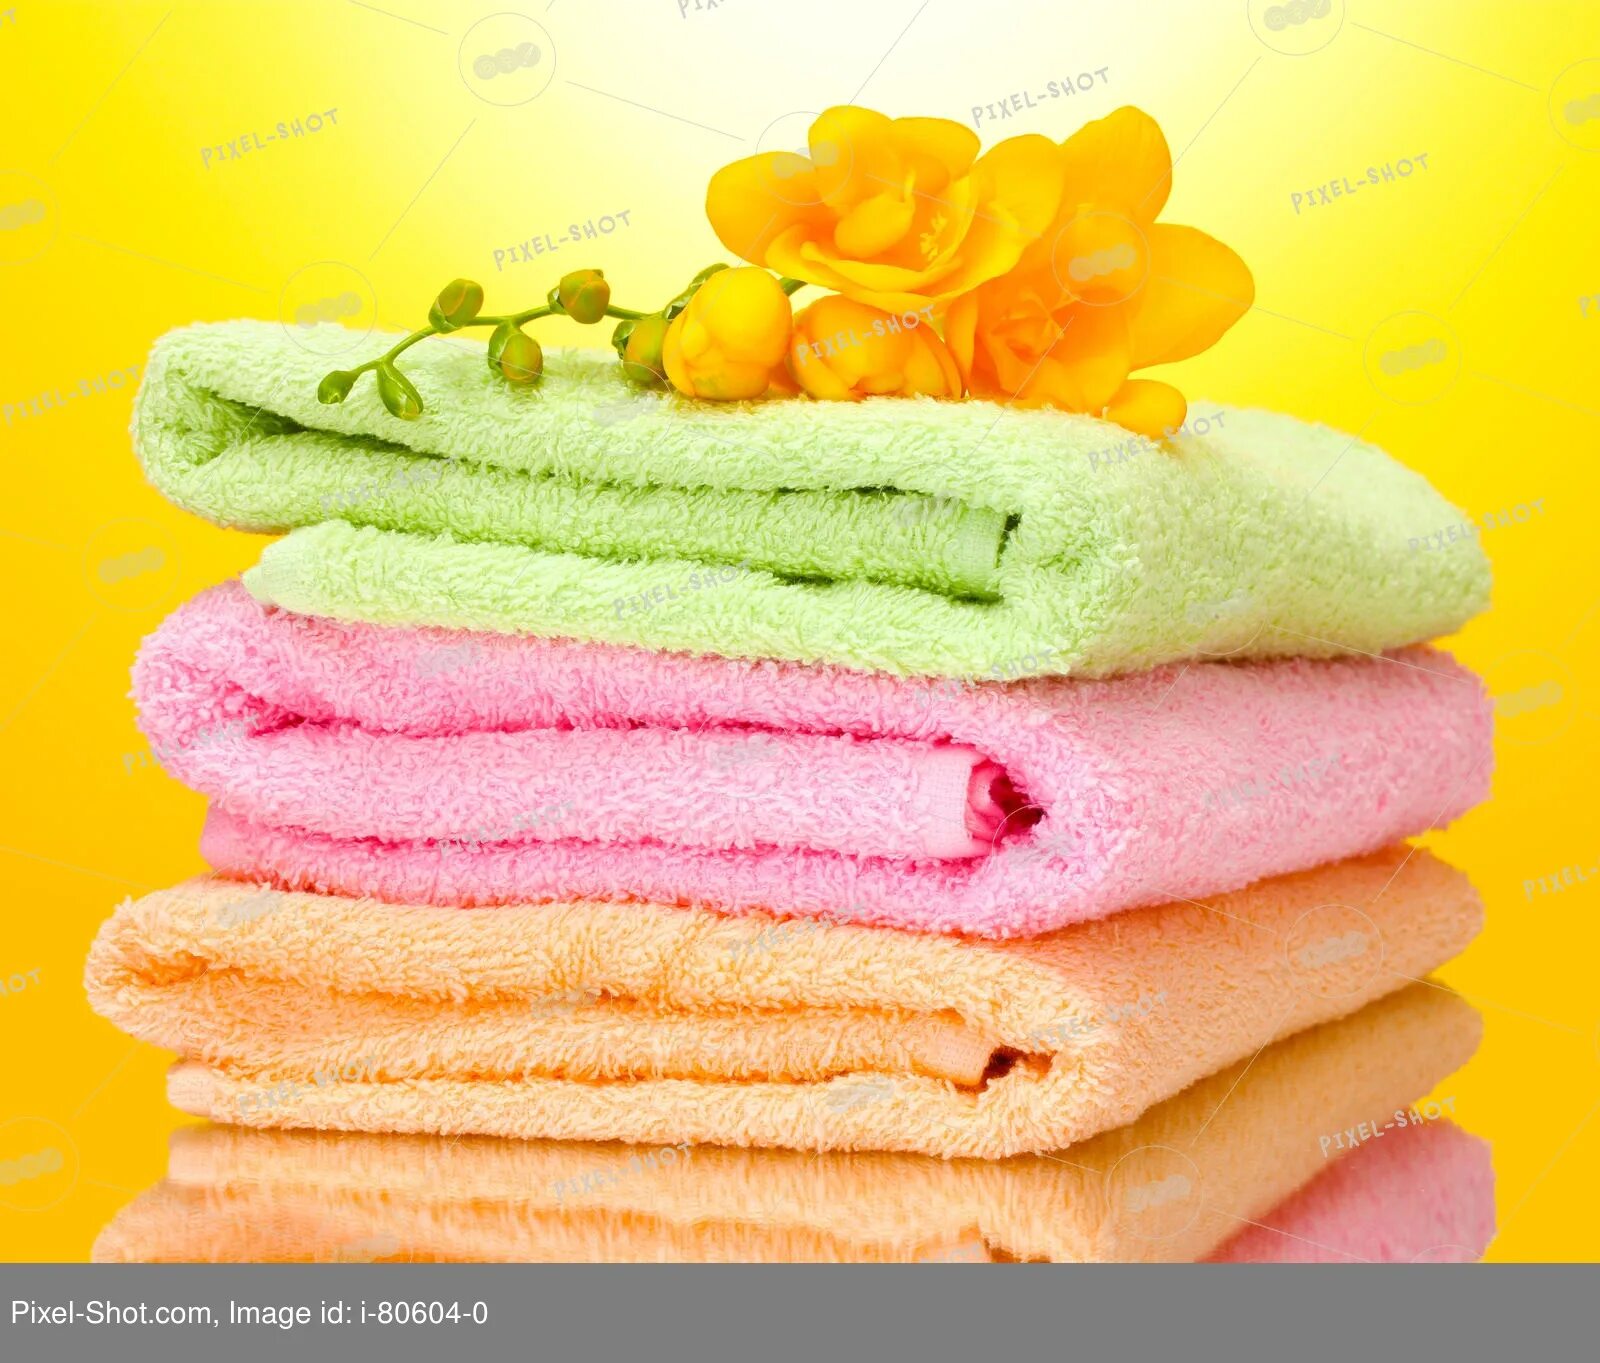 Включи полотенце. Полотенца. Махровые изделия. Халаты и полотенца из махры. Махровые полотенца желтого цвета.